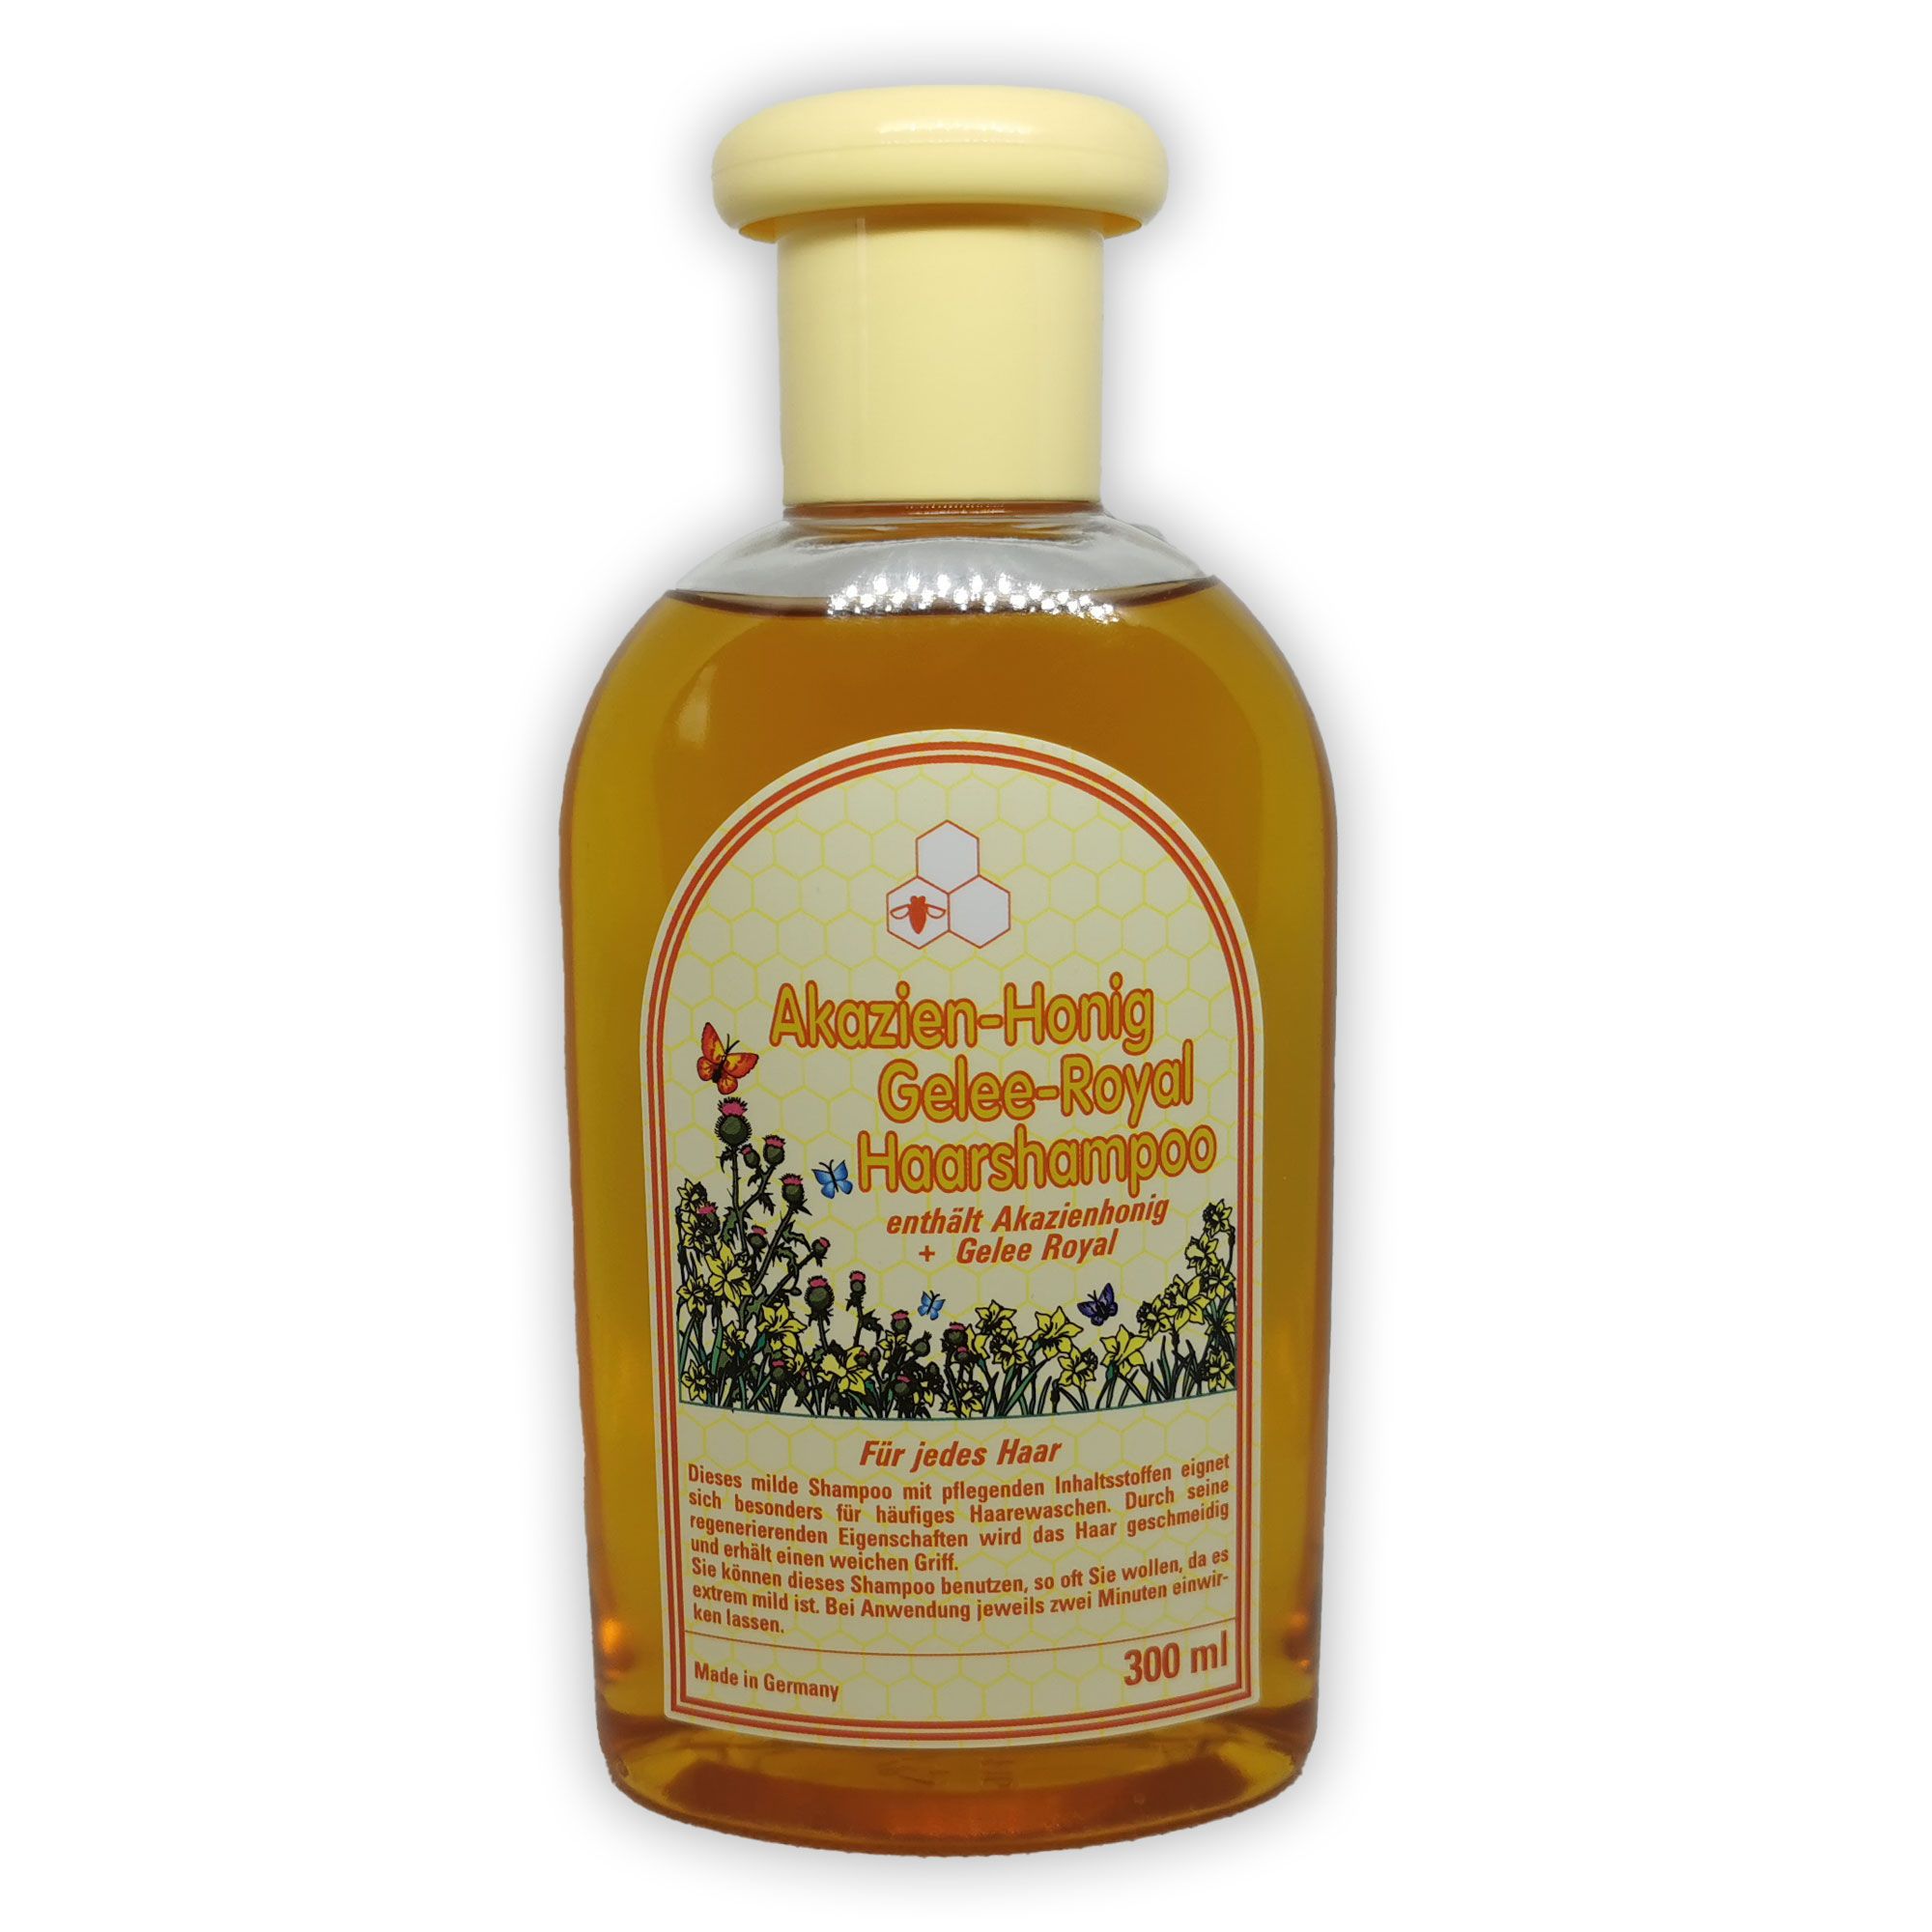 Akazien-Honig Gelee-Royal Haarshampoo